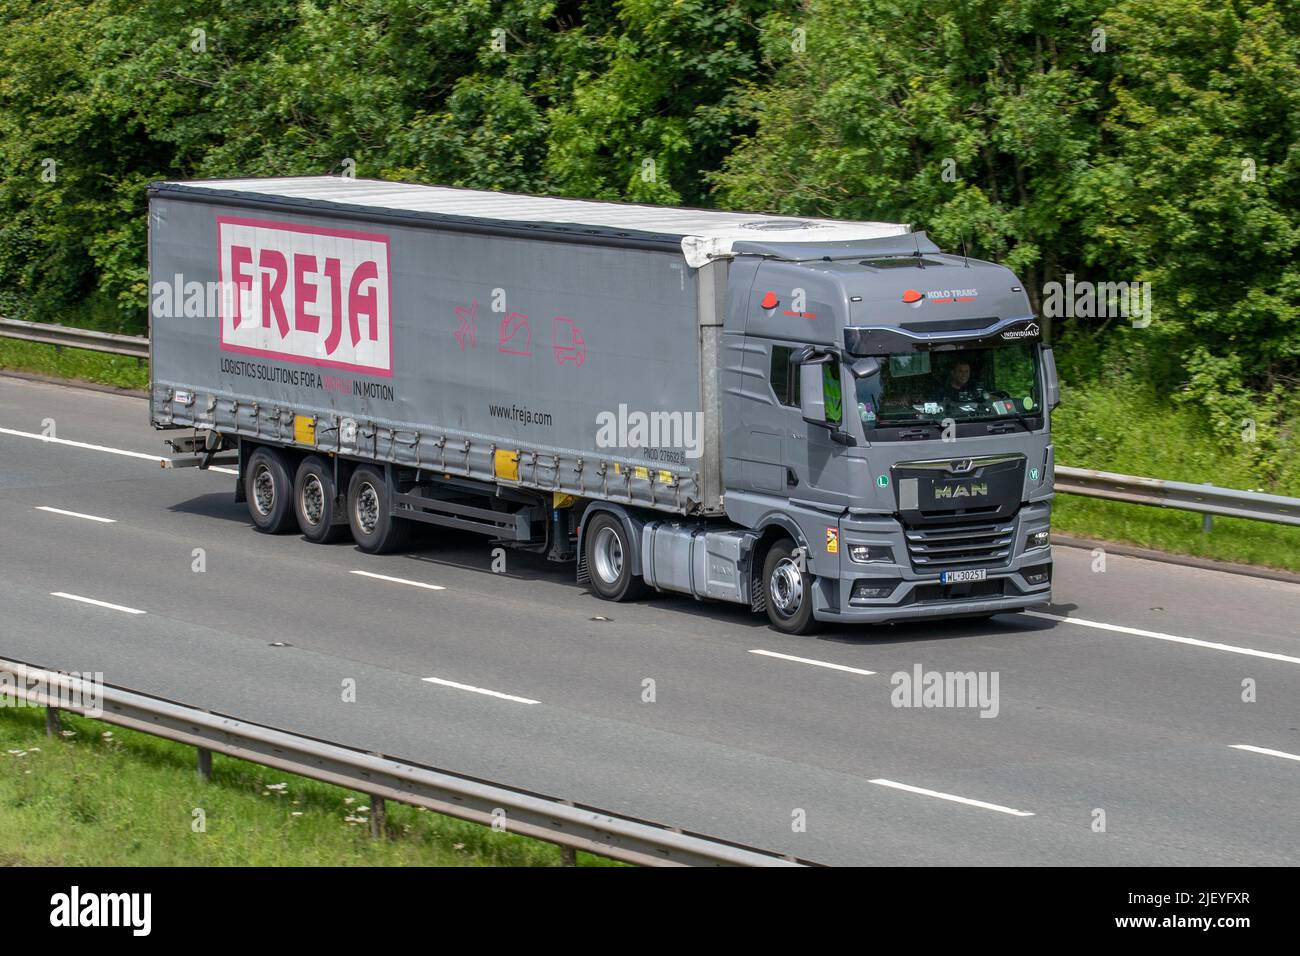 FREJA transport & Logistics A/S European Transportation MAN curvided camion voyageant sur l'autoroute M61 près de Manchester, Royaume-Uni Banque D'Images